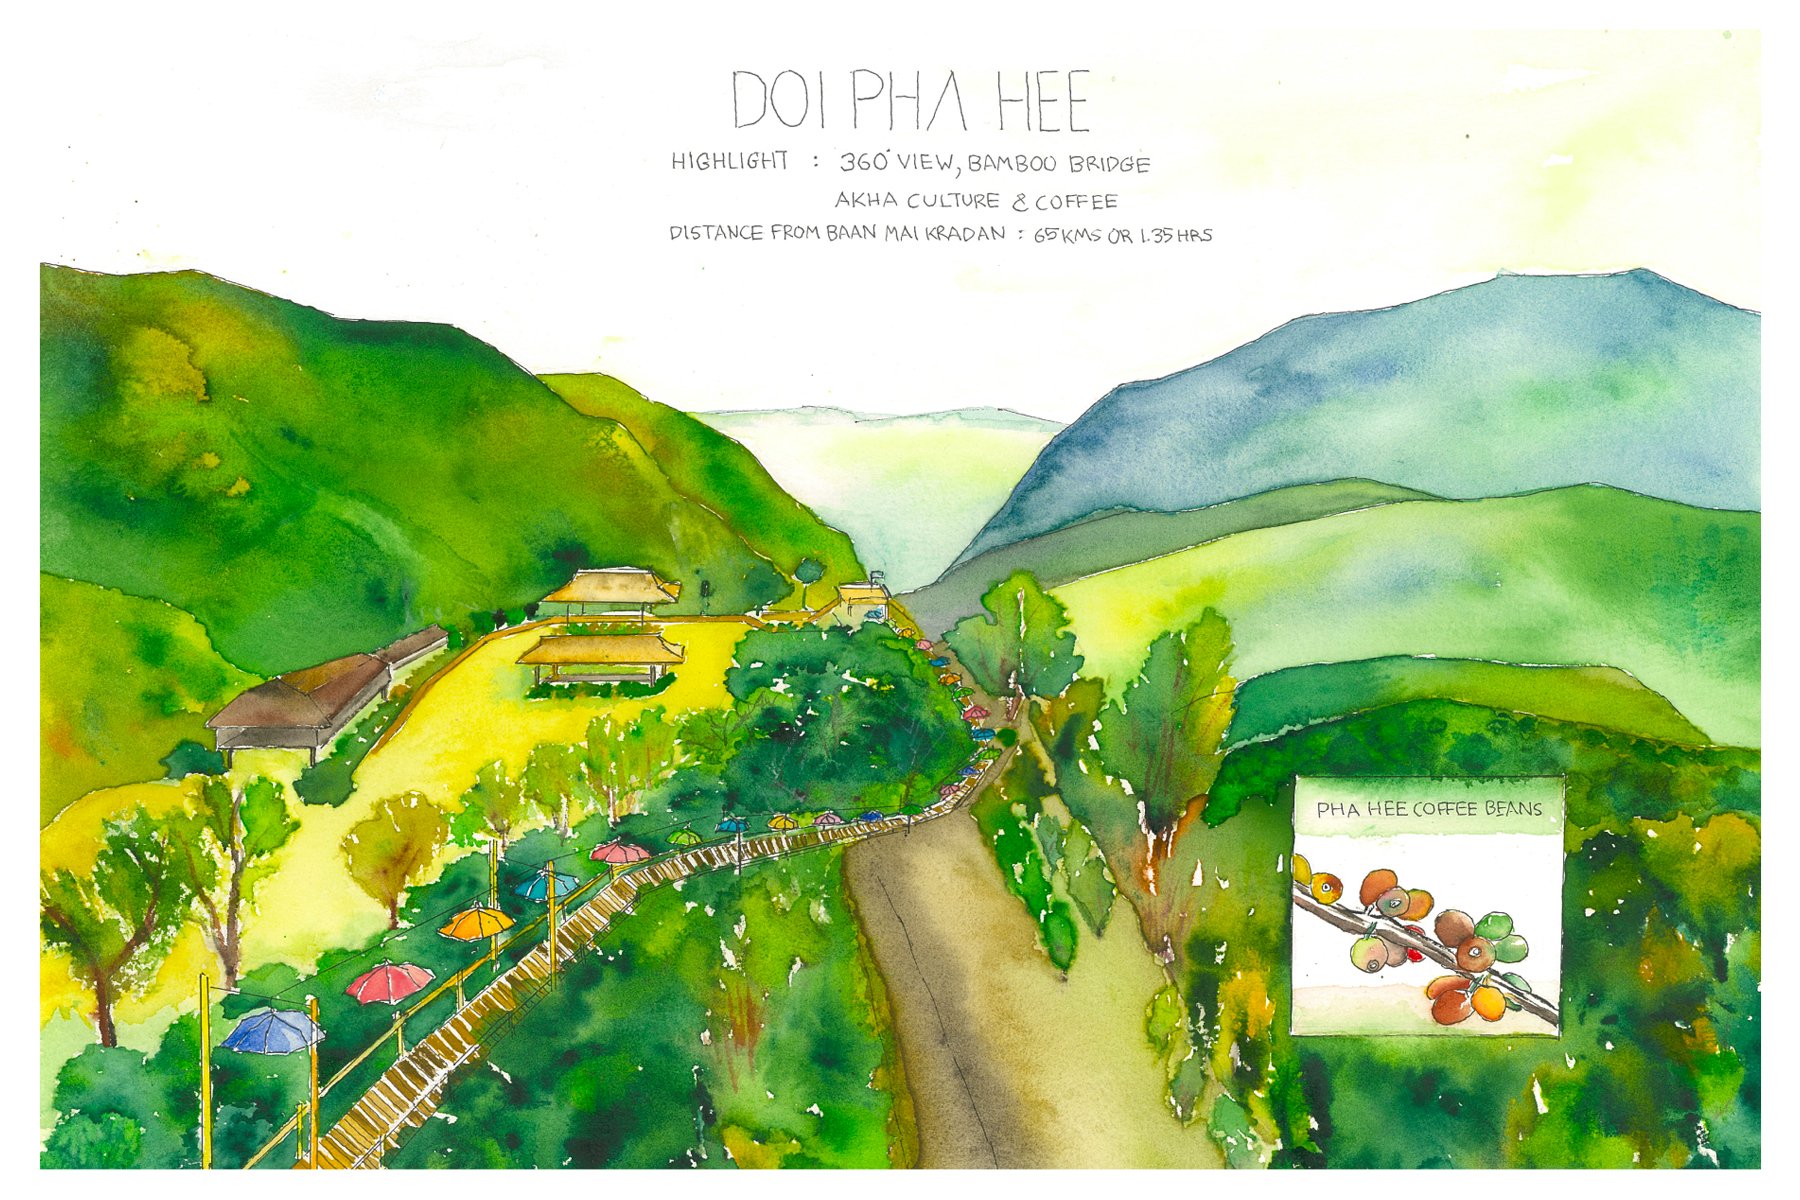 BMK Postcard (Doi Pha Hee)